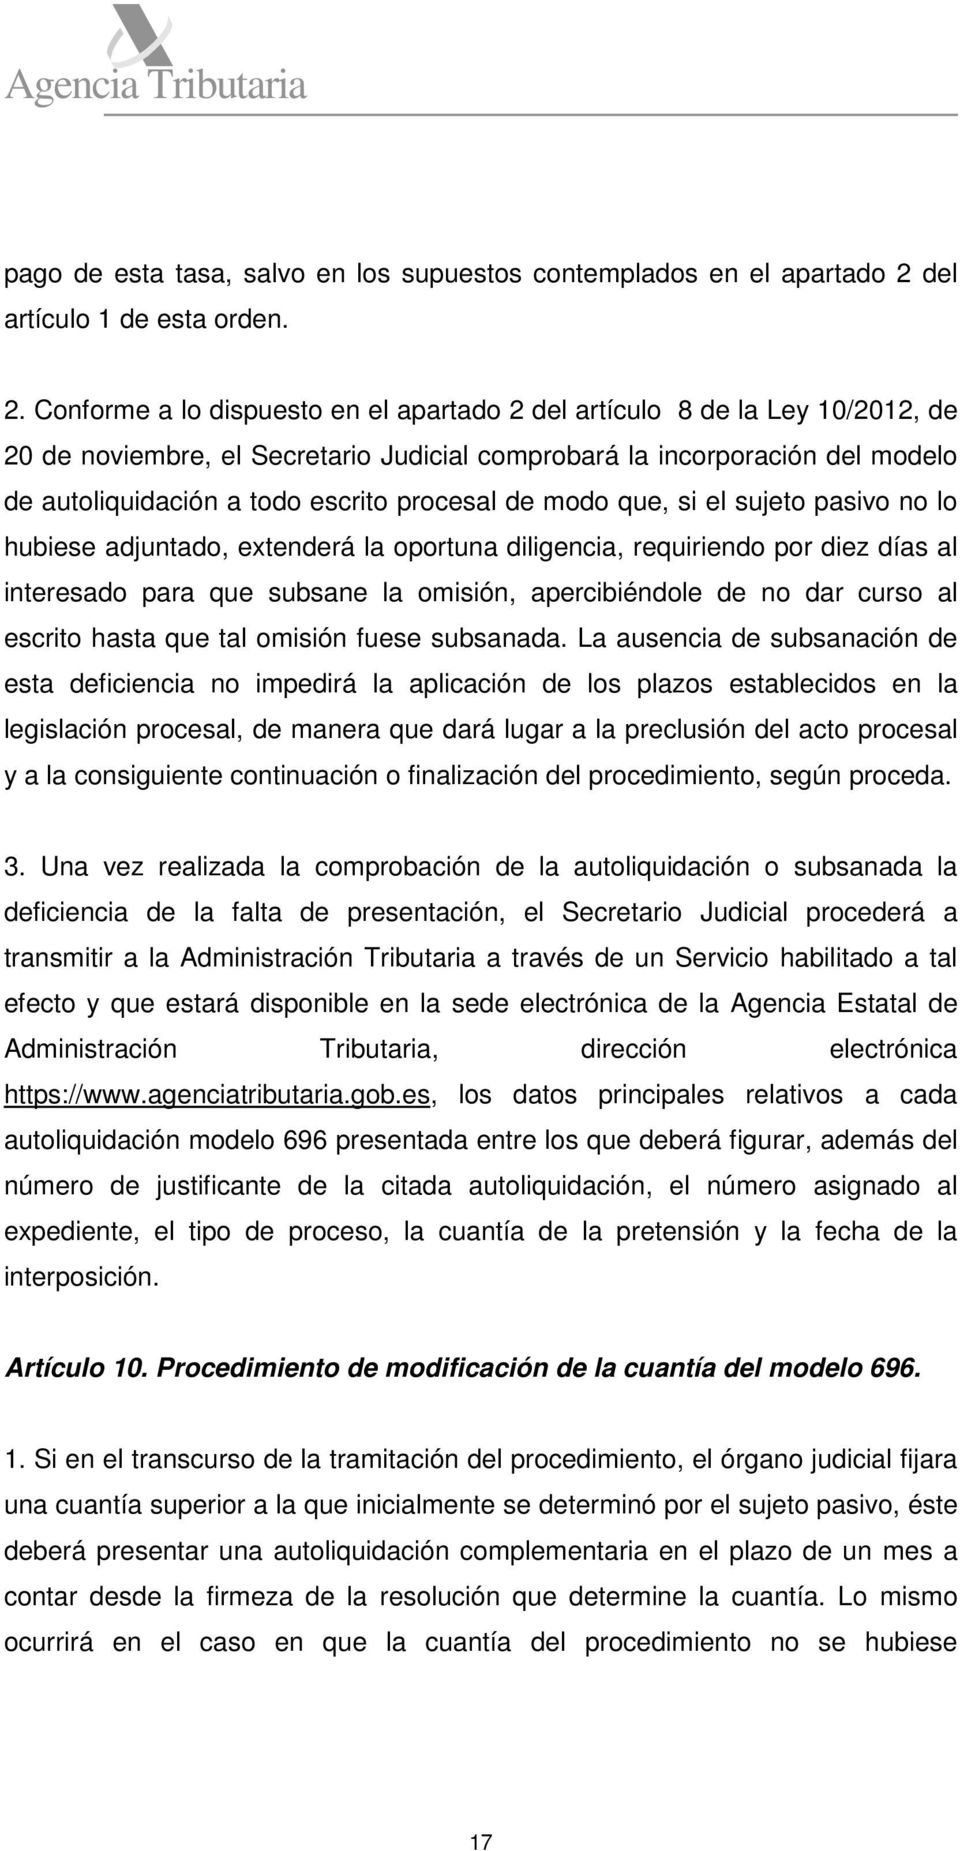 Conforme a lo dispuesto en el apartado 2 del artículo 8 de la Ley 10/2012, de 20 de noviembre, el Secretario Judicial comprobará la incorporación del modelo de autoliquidación a todo escrito procesal